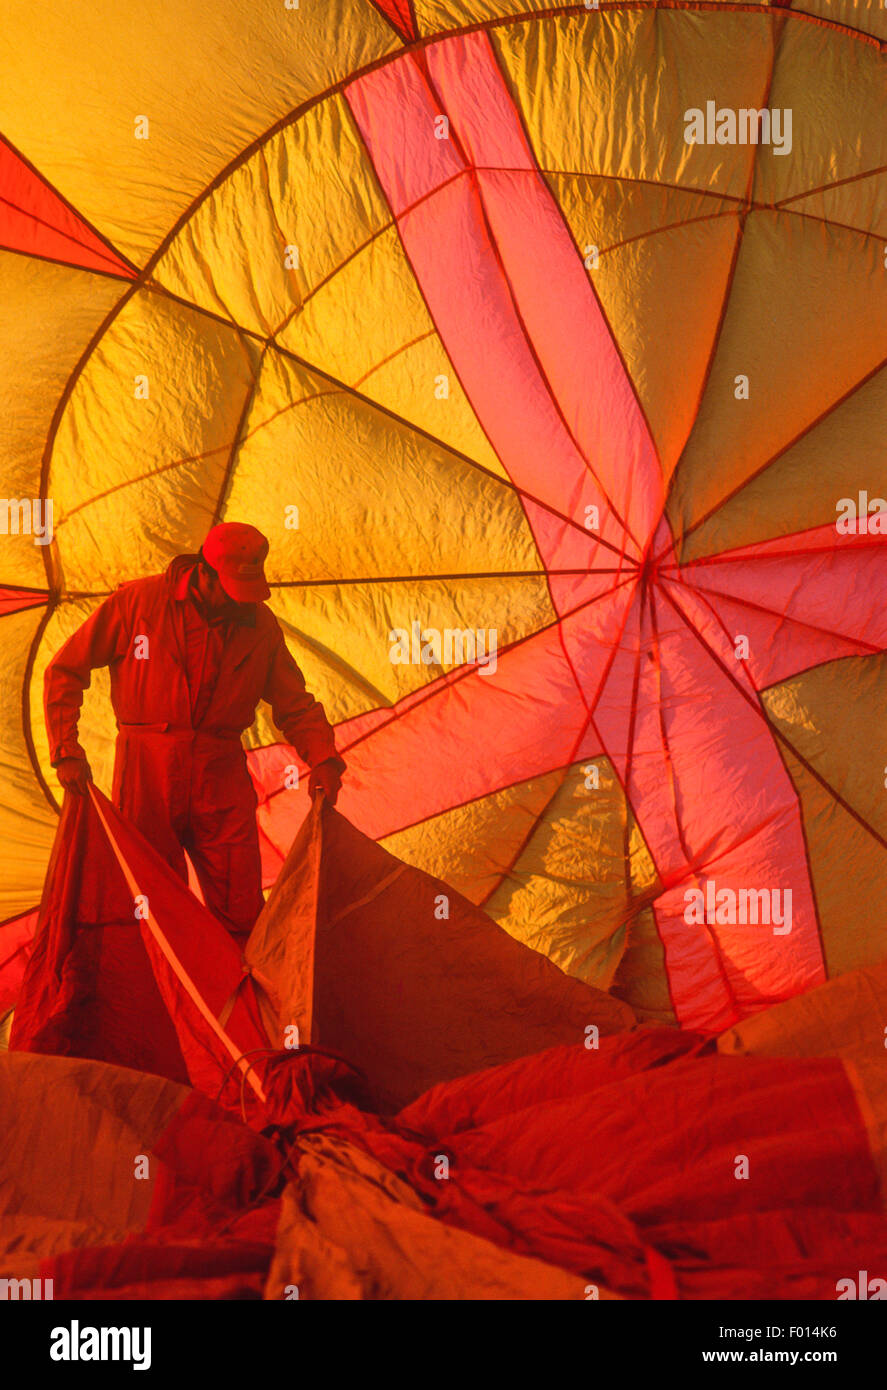 Inspektion der Innenseite der Ballon Baldachin, Albuquerque Balloon Fiesta, Albuquerque Stockfoto